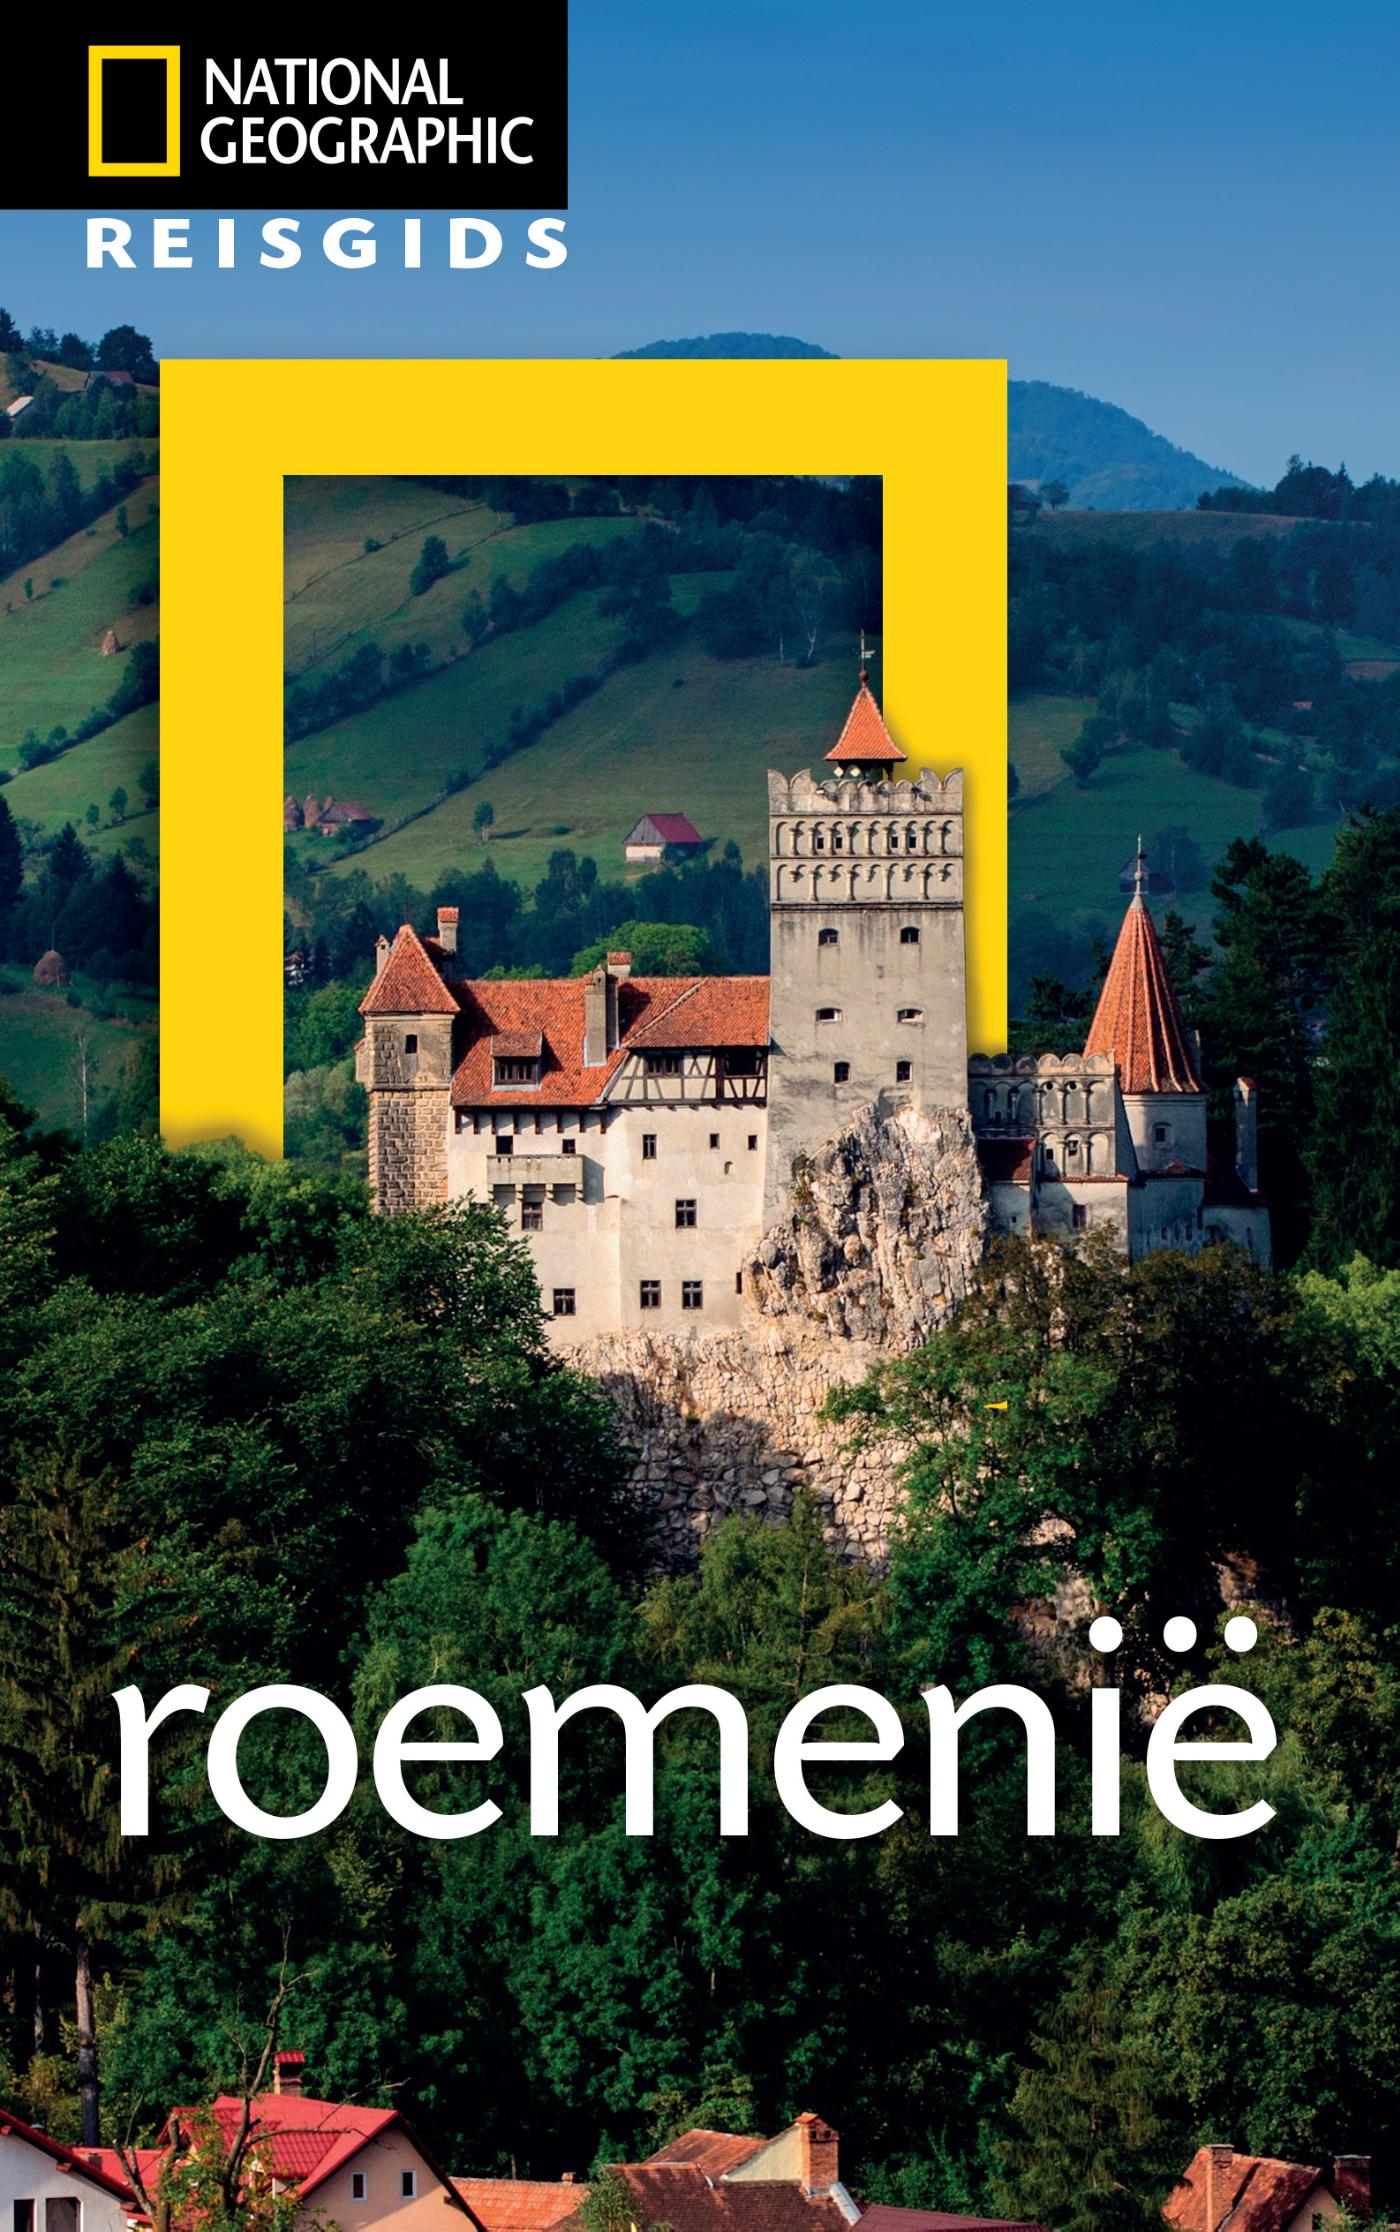 Reisgids National Geographic Roemenië | Kosmos de zwerver